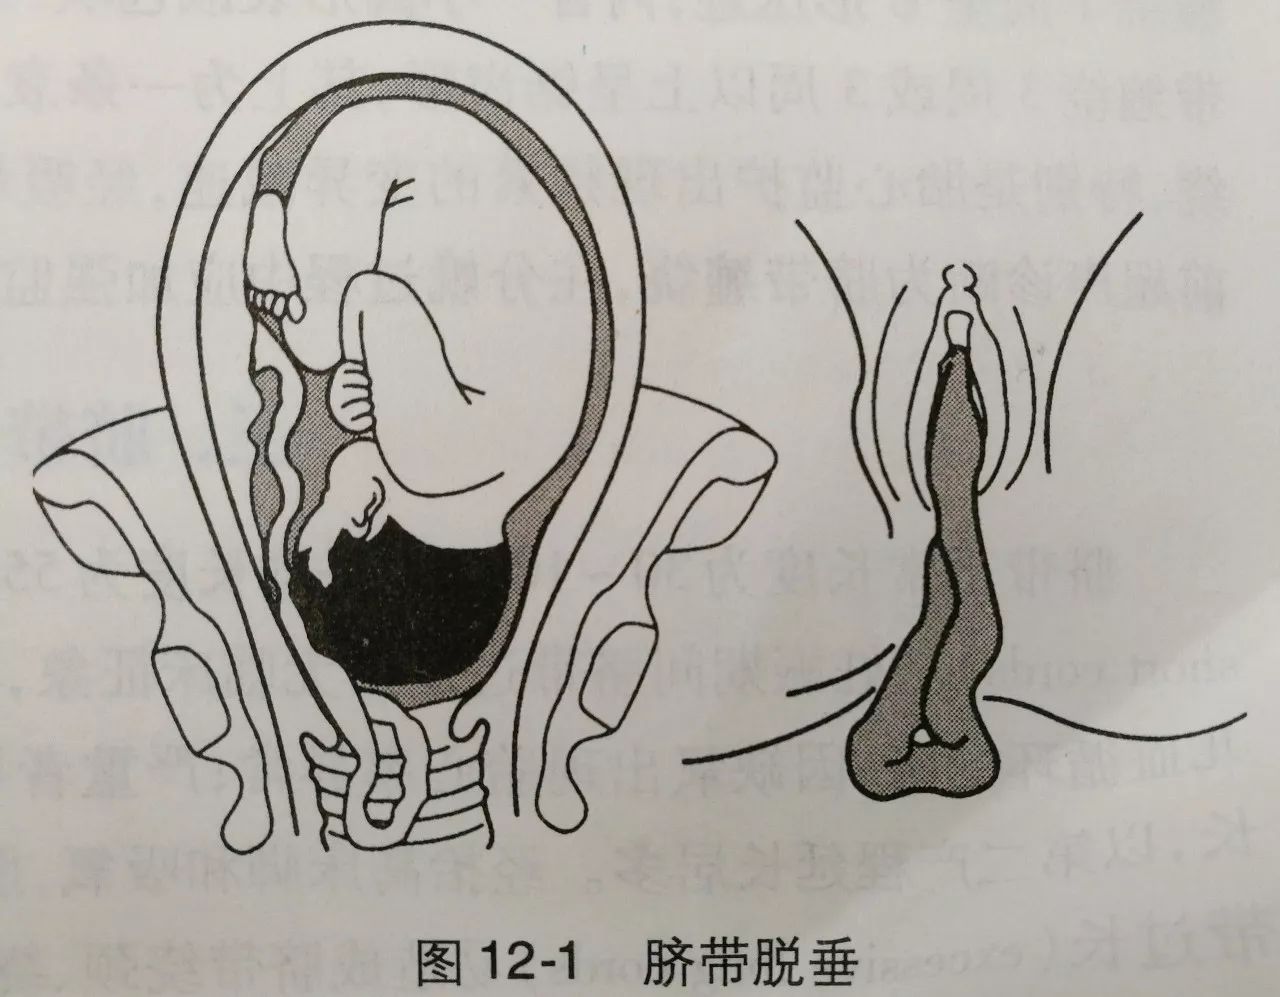 而脐带脱垂则是在胎膜破裂(俗称破水)后,脐带先于胎儿脱出宫颈口外